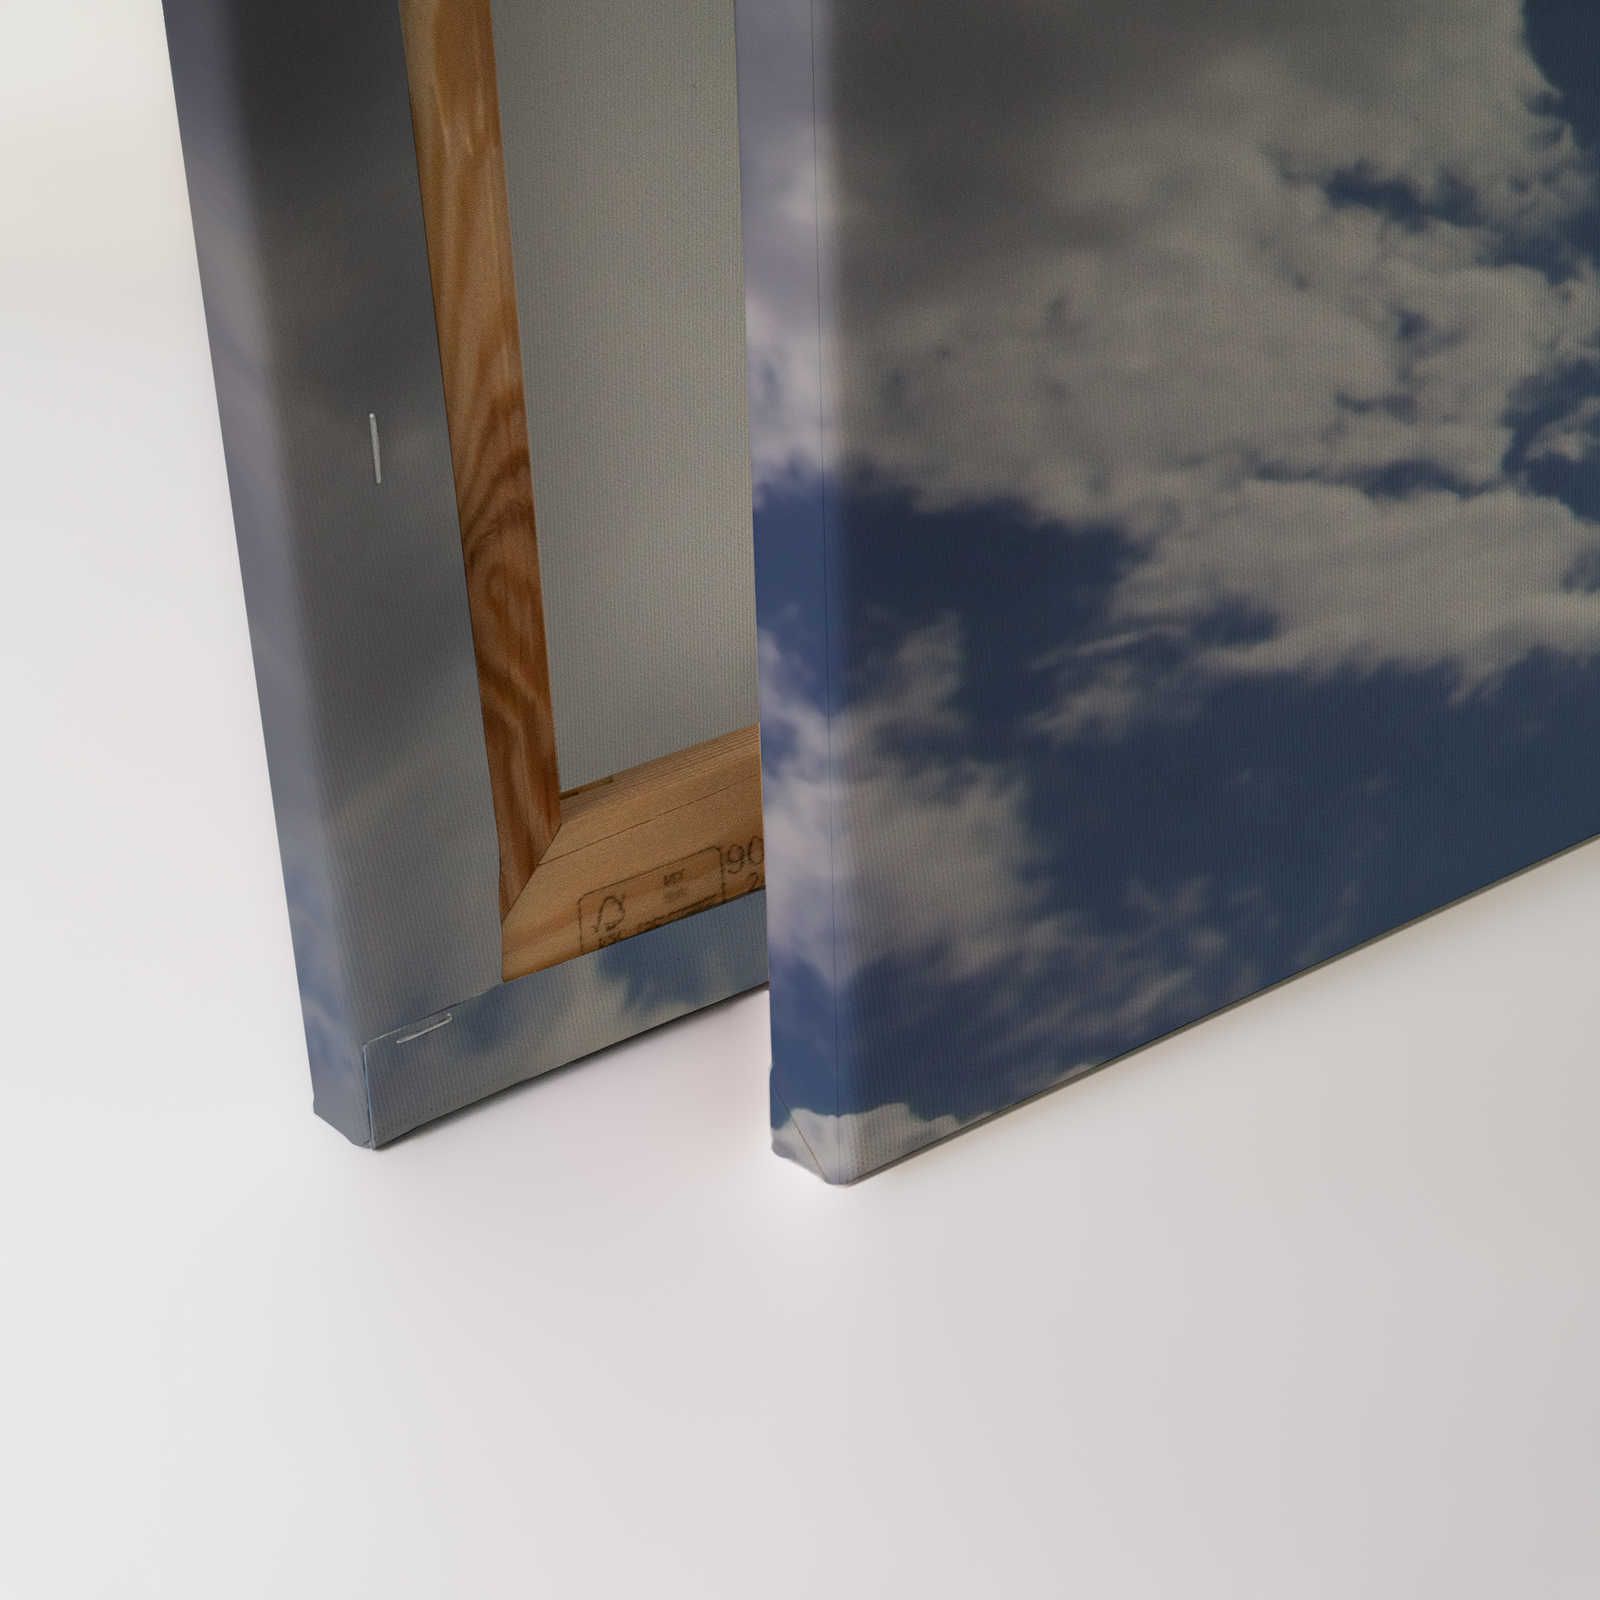             Ciel bleu - Tableau toile soleil & ciel nuageux bleu - 0,90 m x 0,60 m
        